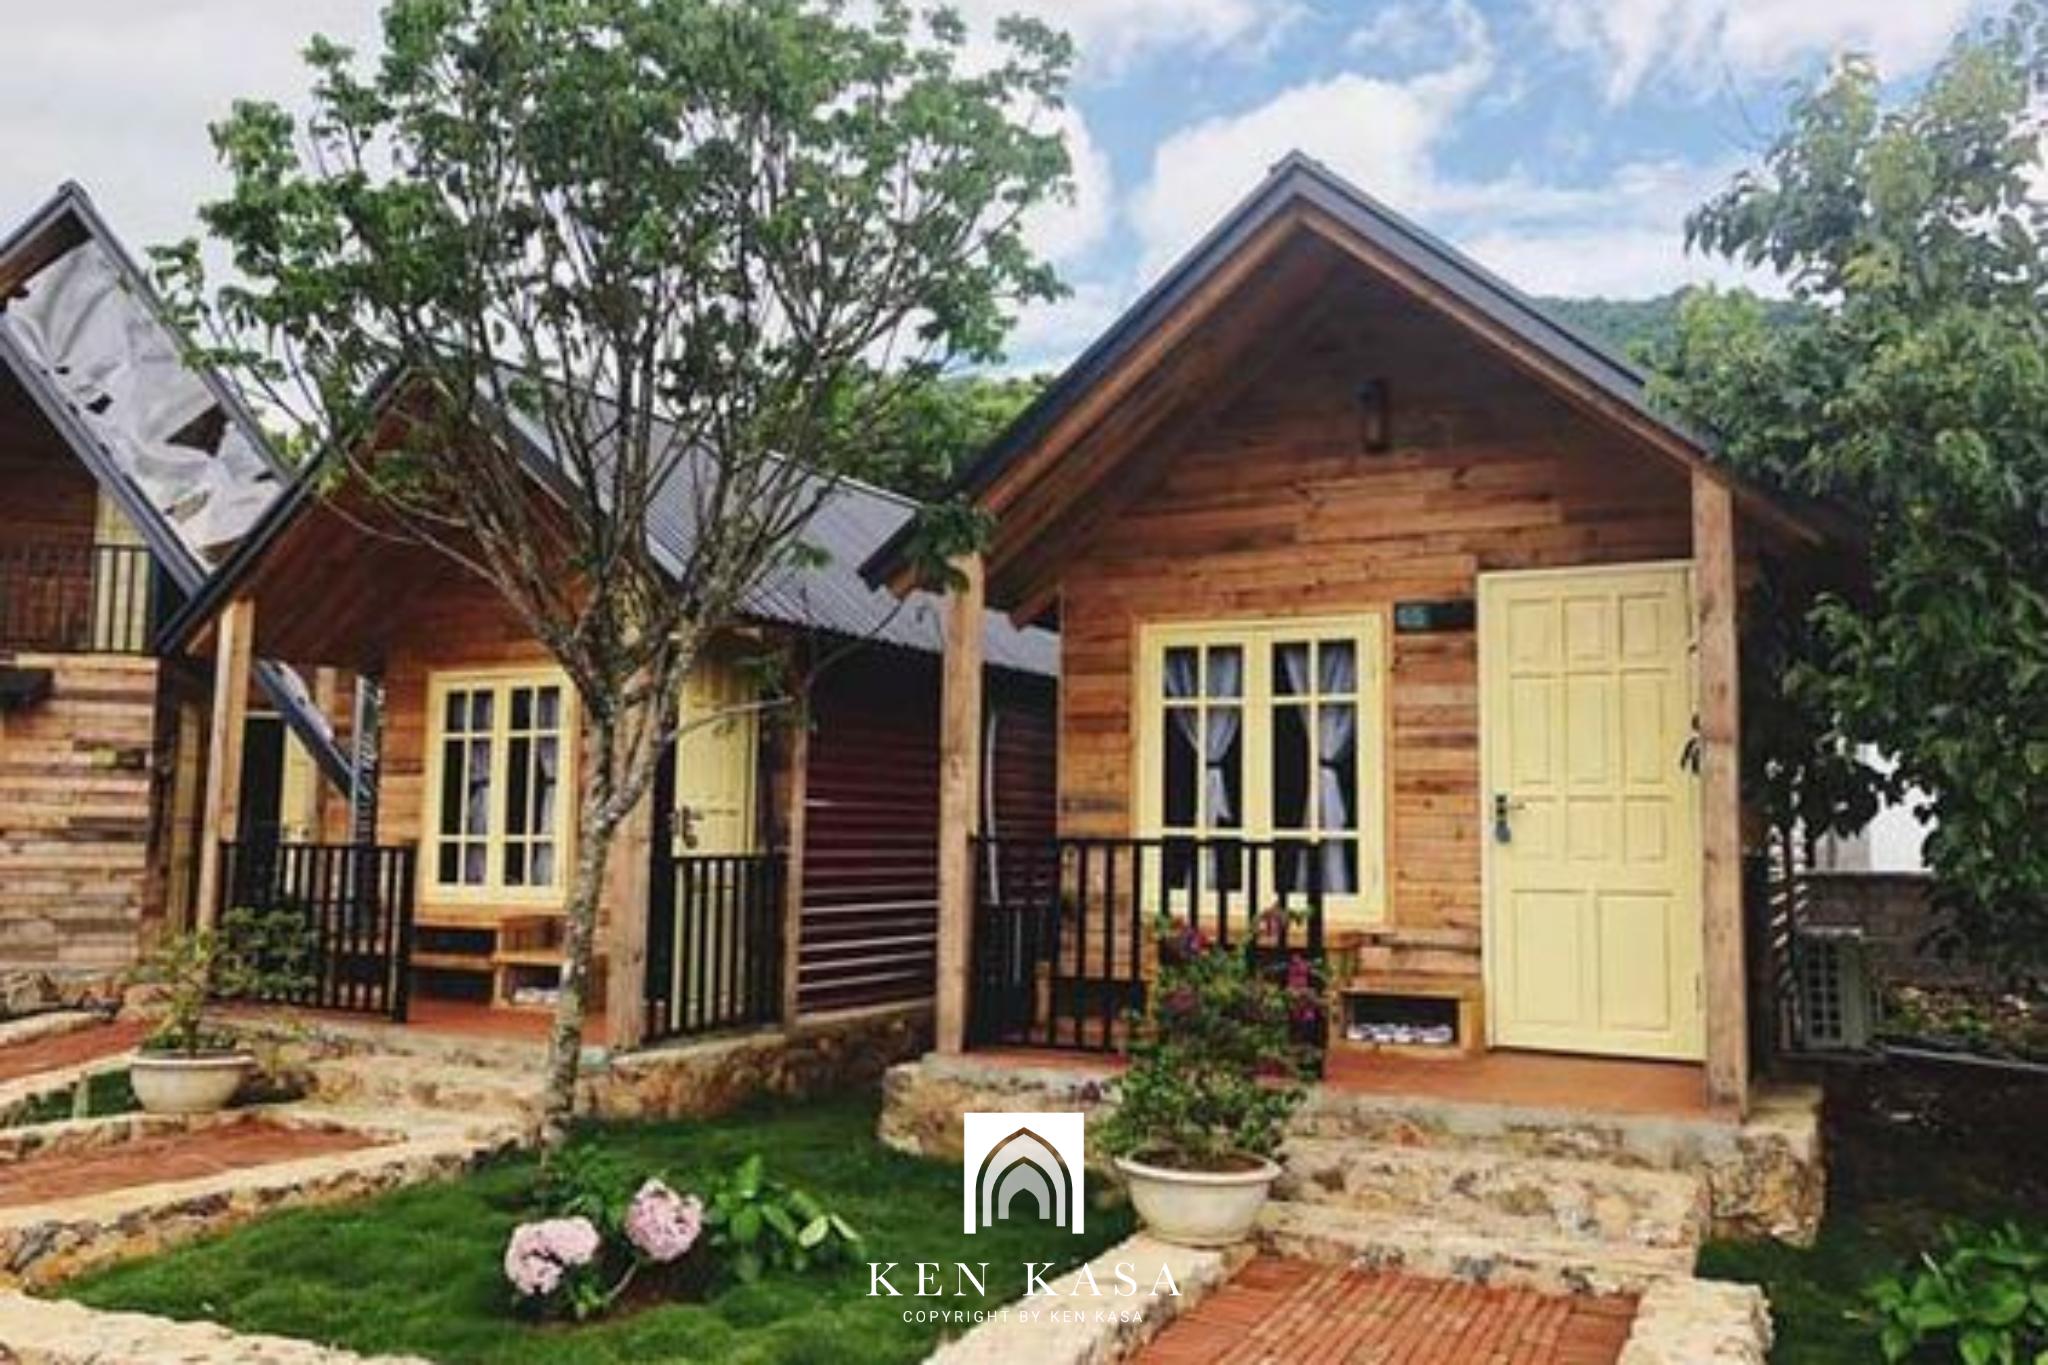 thiết kế homestay nhà vườn đẹp sử dụng gỗ làm chất liệu chính